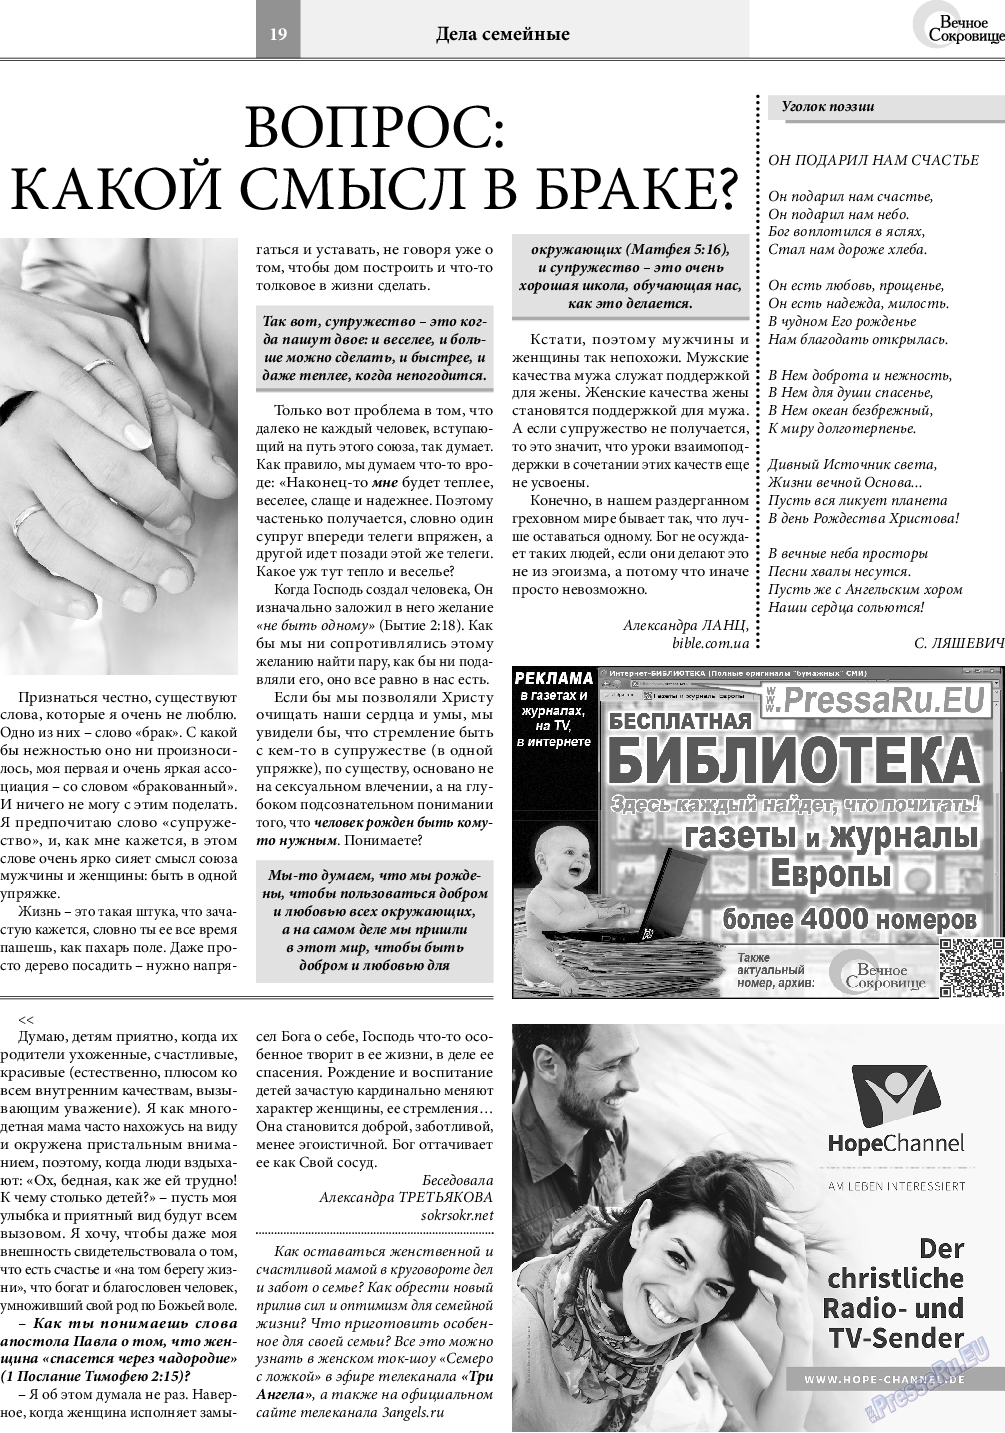 Вечное сокровище, газета. 2020 №6 стр.19